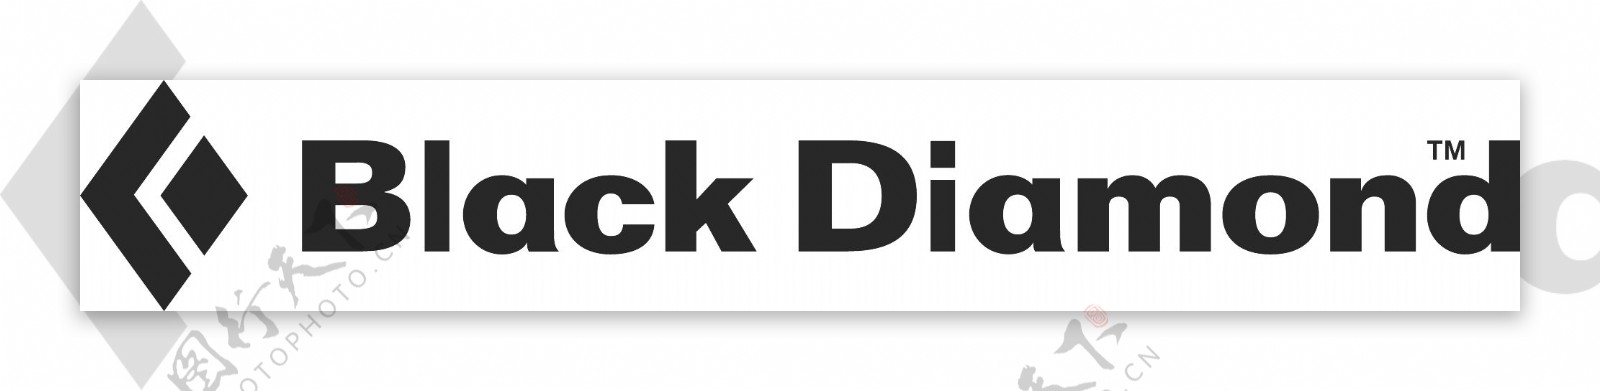 户外品牌BlackDiamond矢量logo